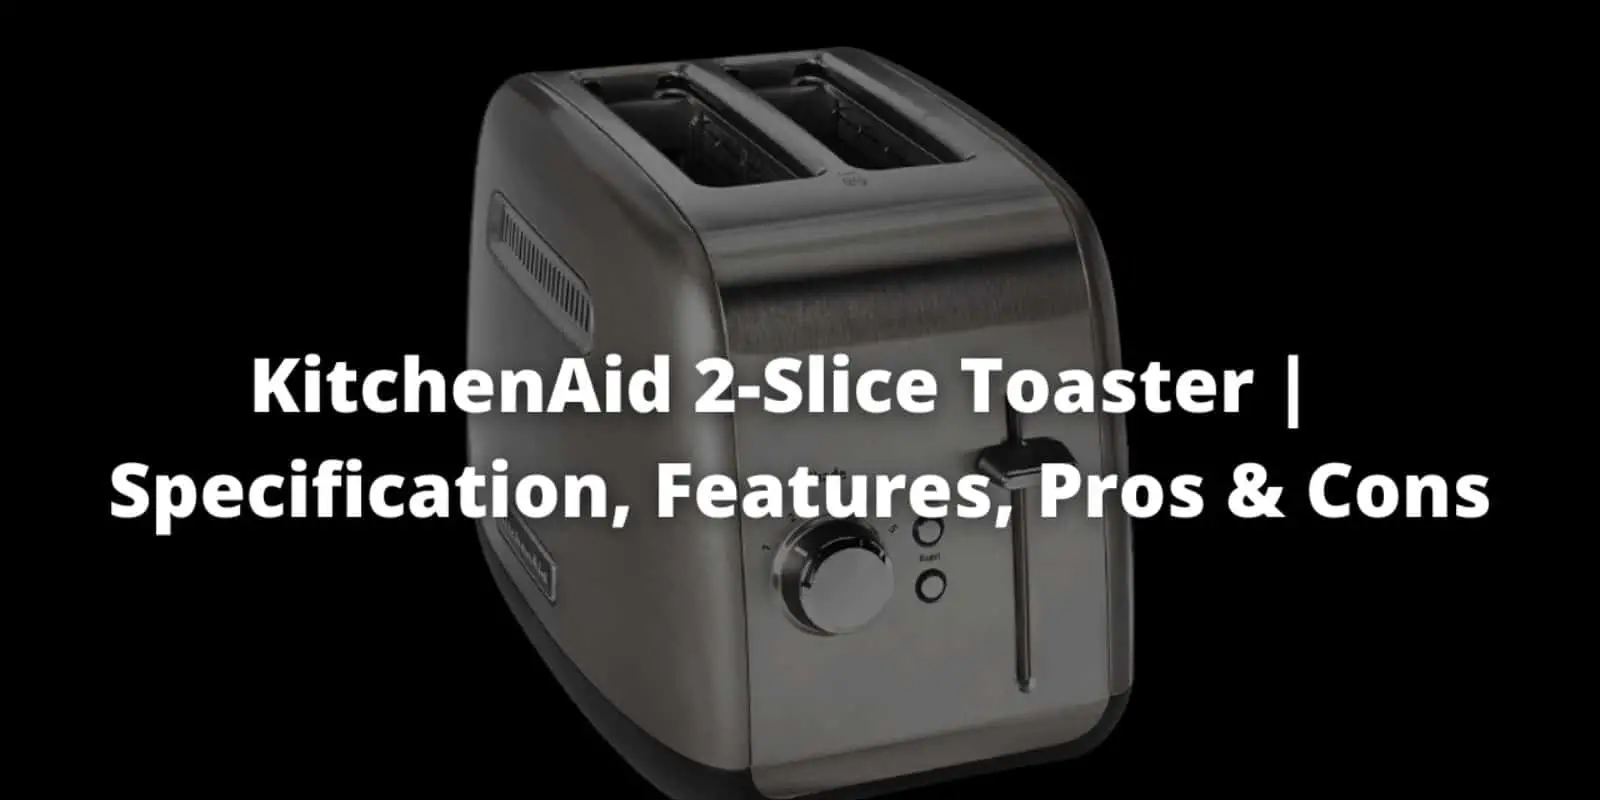 kitchenaid toaster